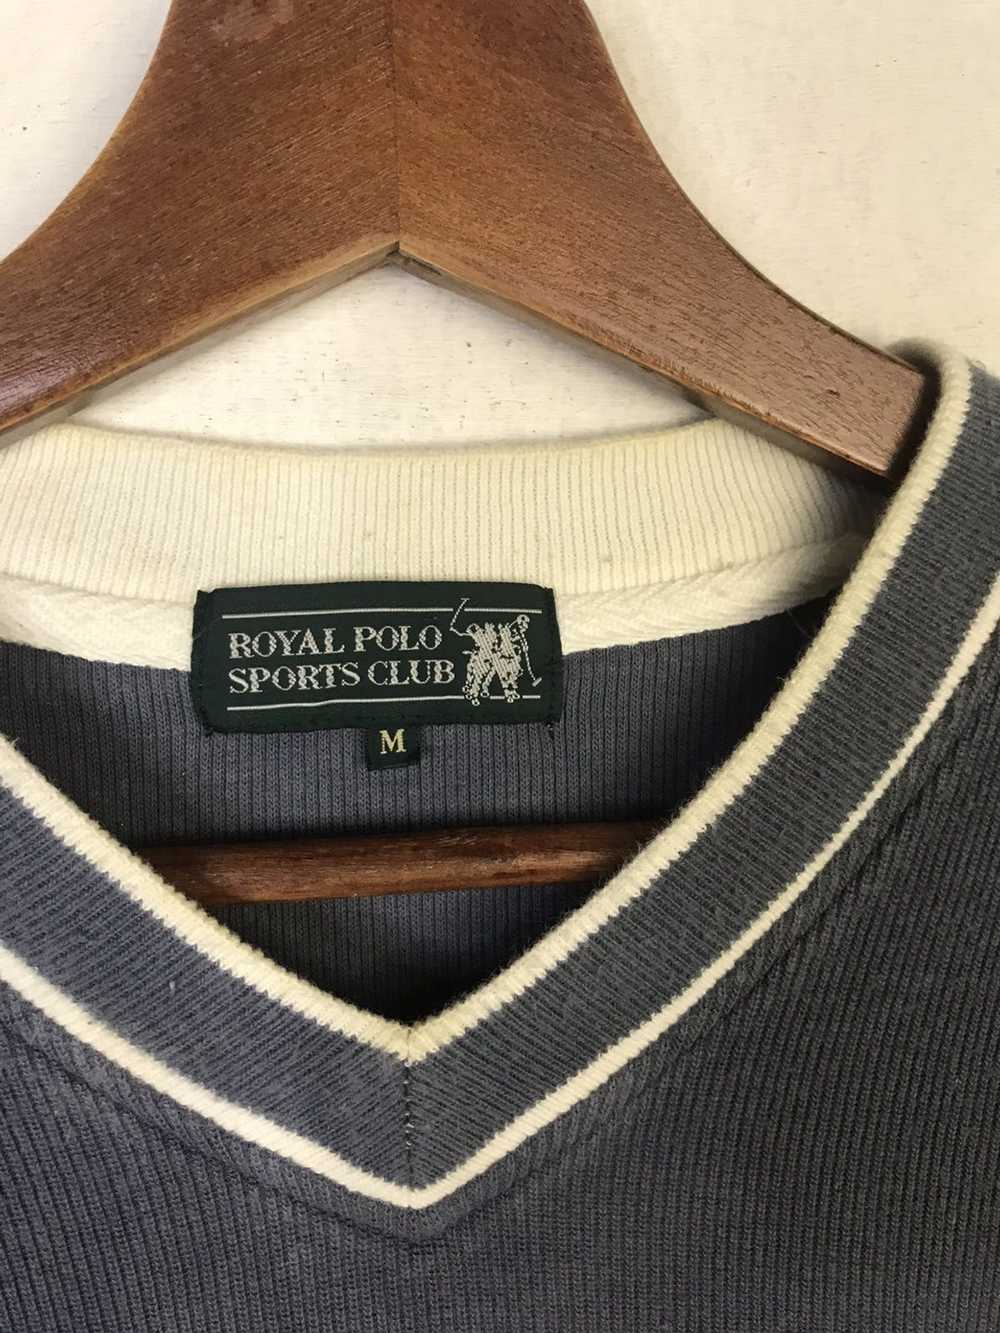 Vintage Royal Polo Sports Club Sweatshirt - image 5